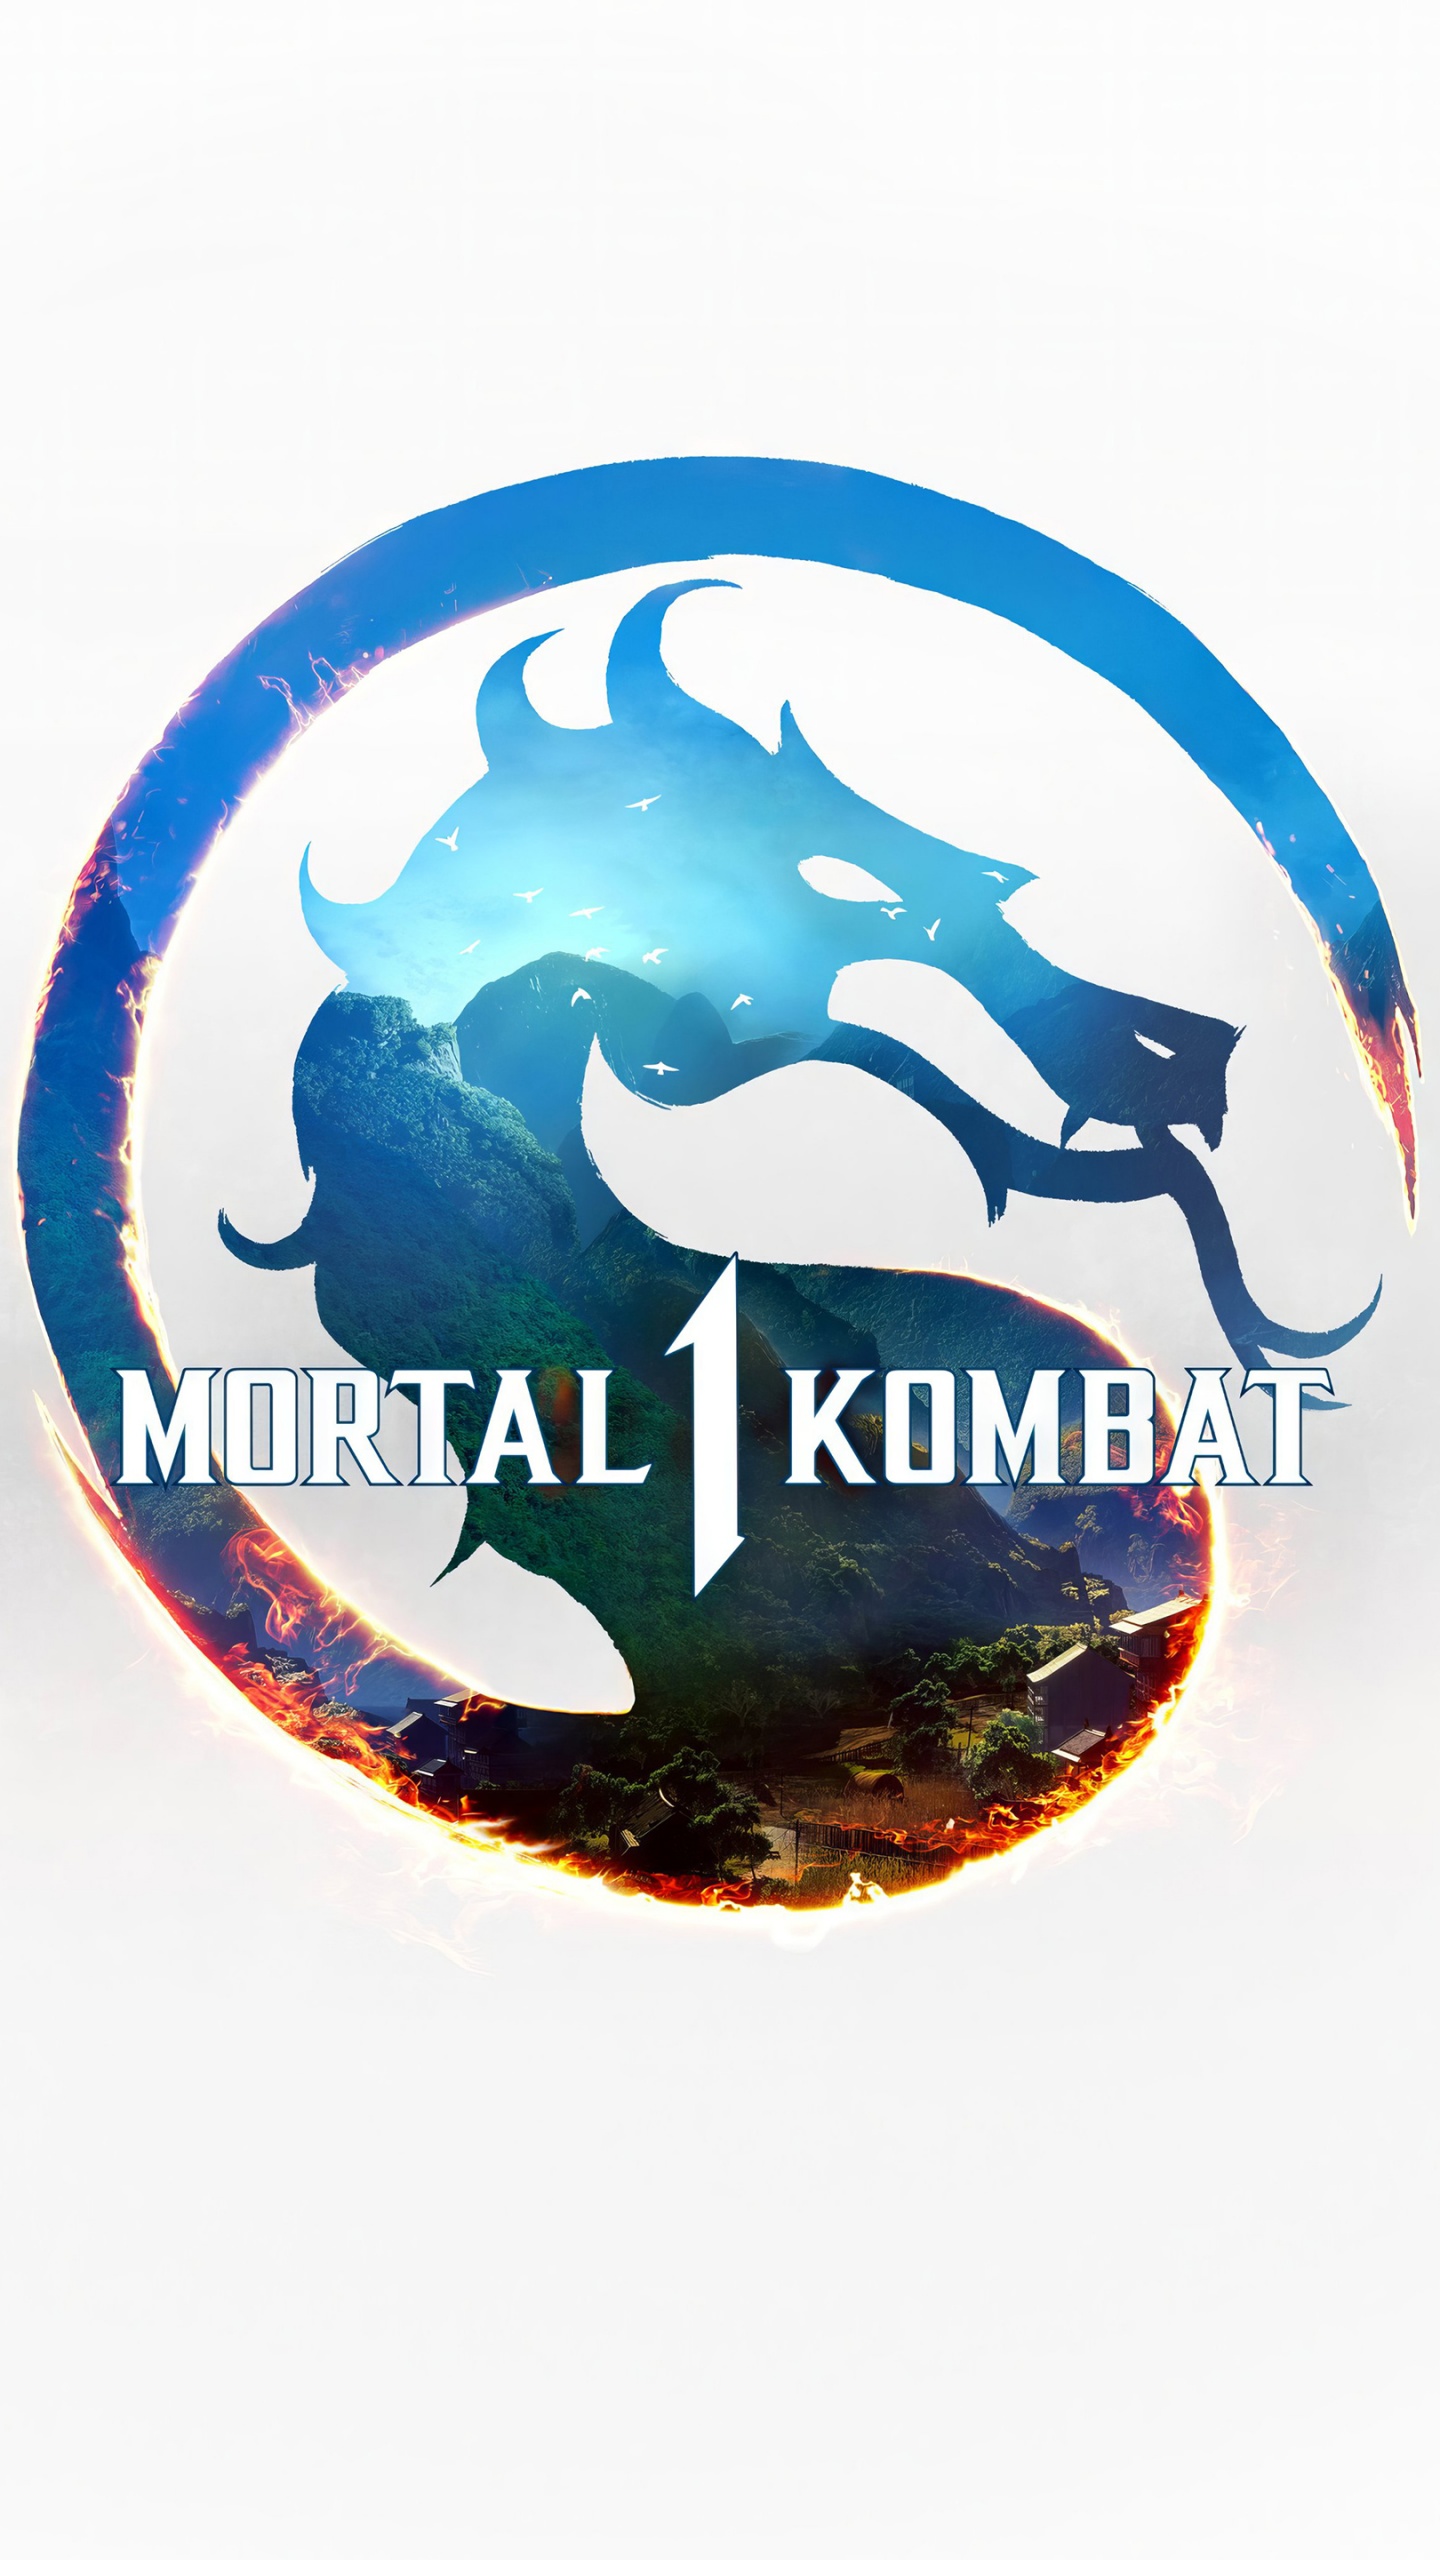 Mortal Kombat (1995) - Desktop Wallpapers, Phone Wallpaper, PFP